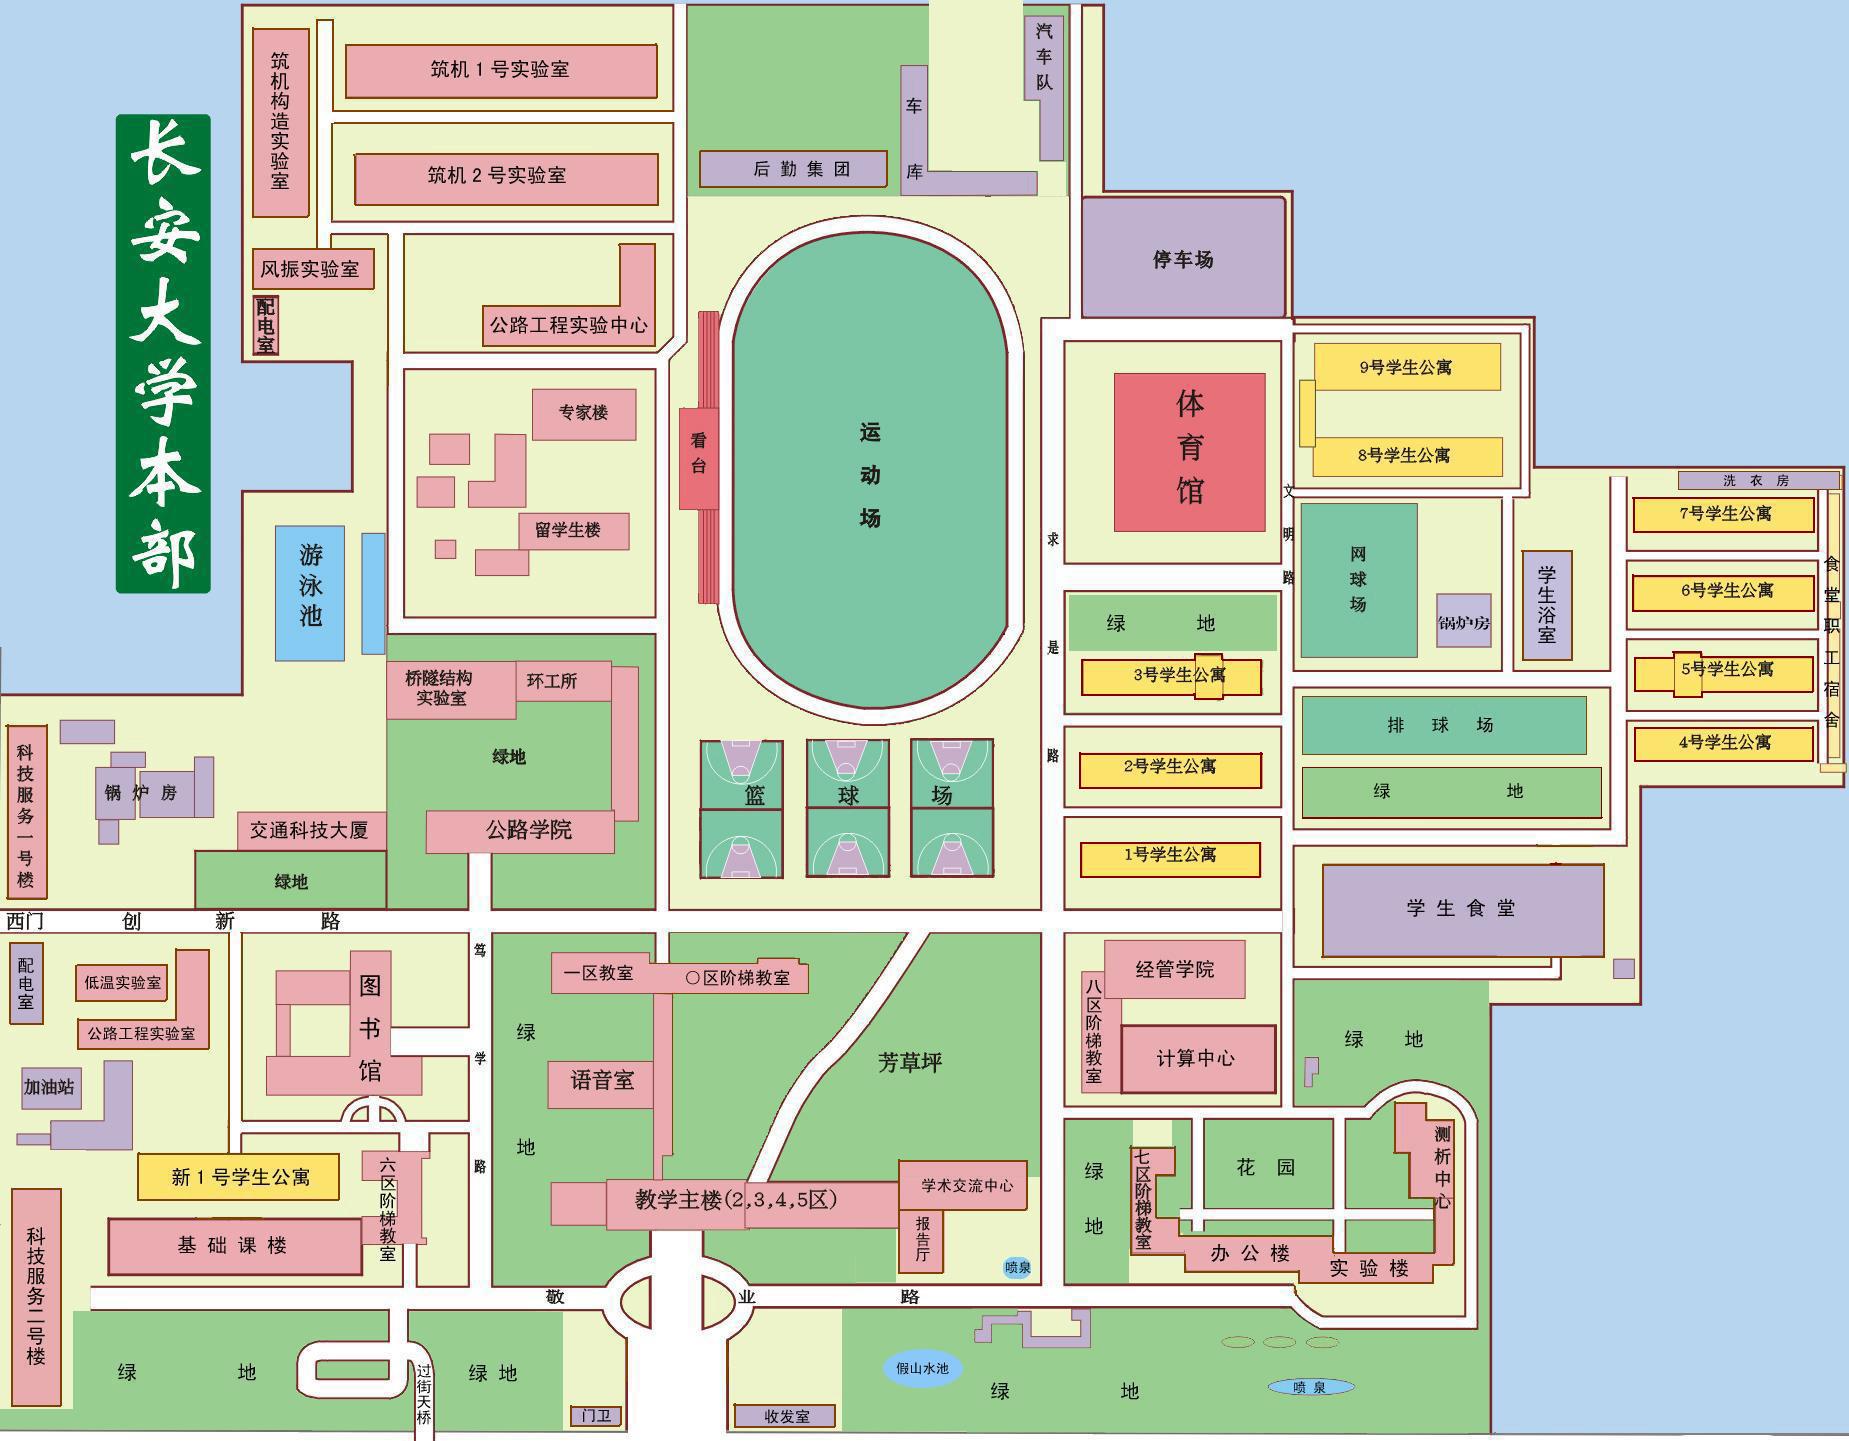 长安大学雁塔校区宿舍楼分布图和本部北院教学楼分布图